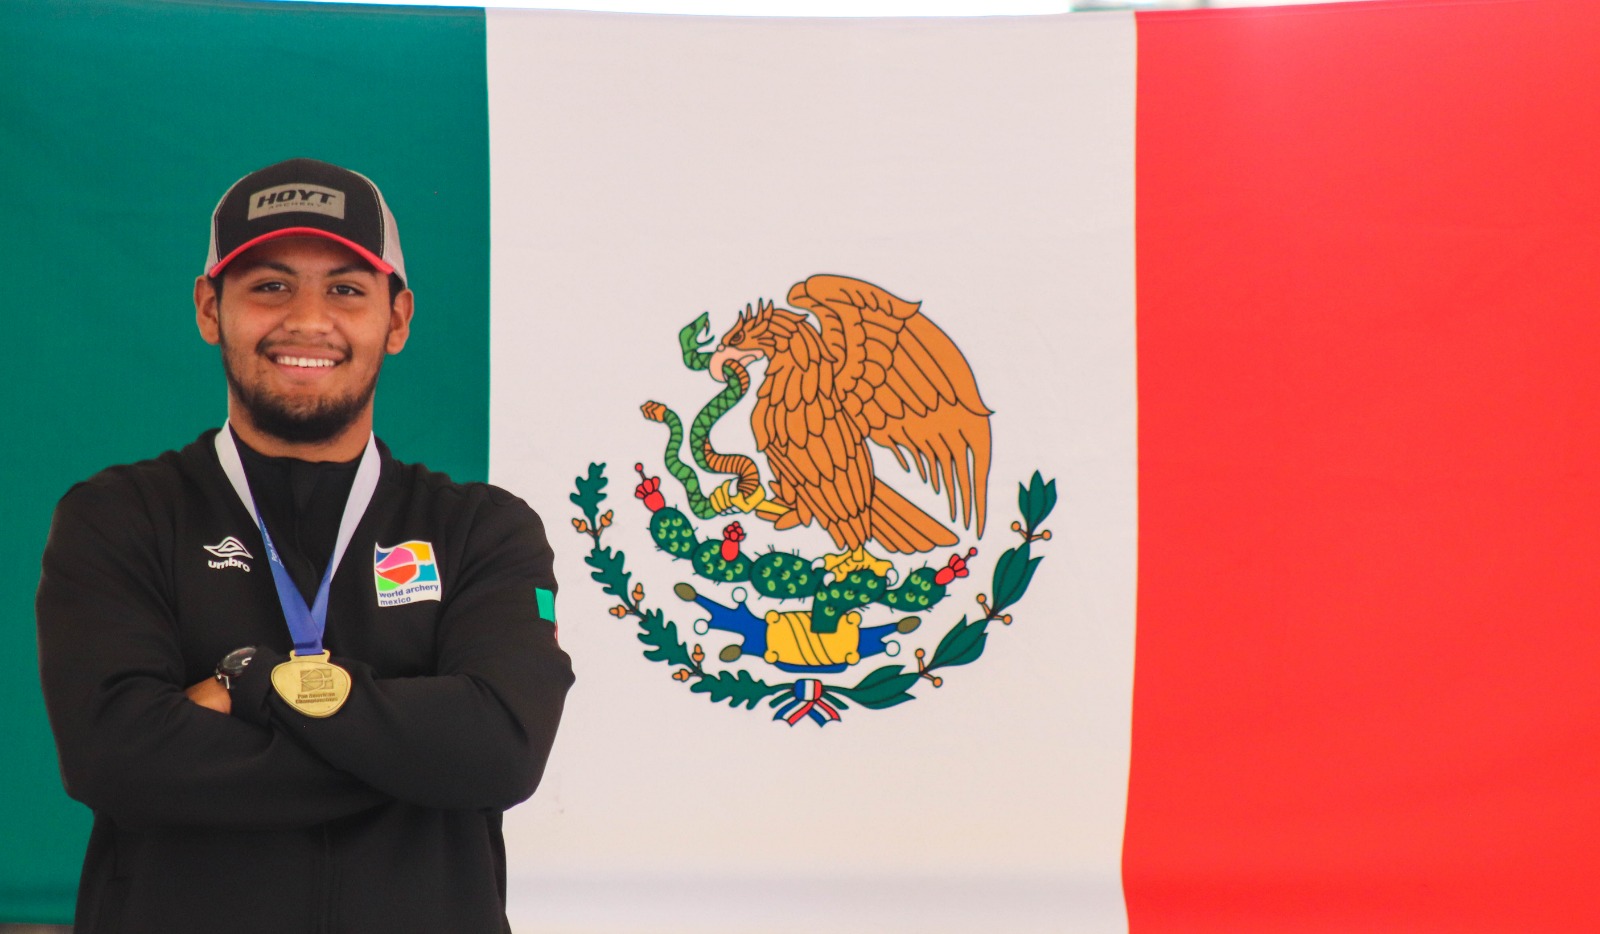 Arquero morelense satisfecho por representar a México en competencia internacional